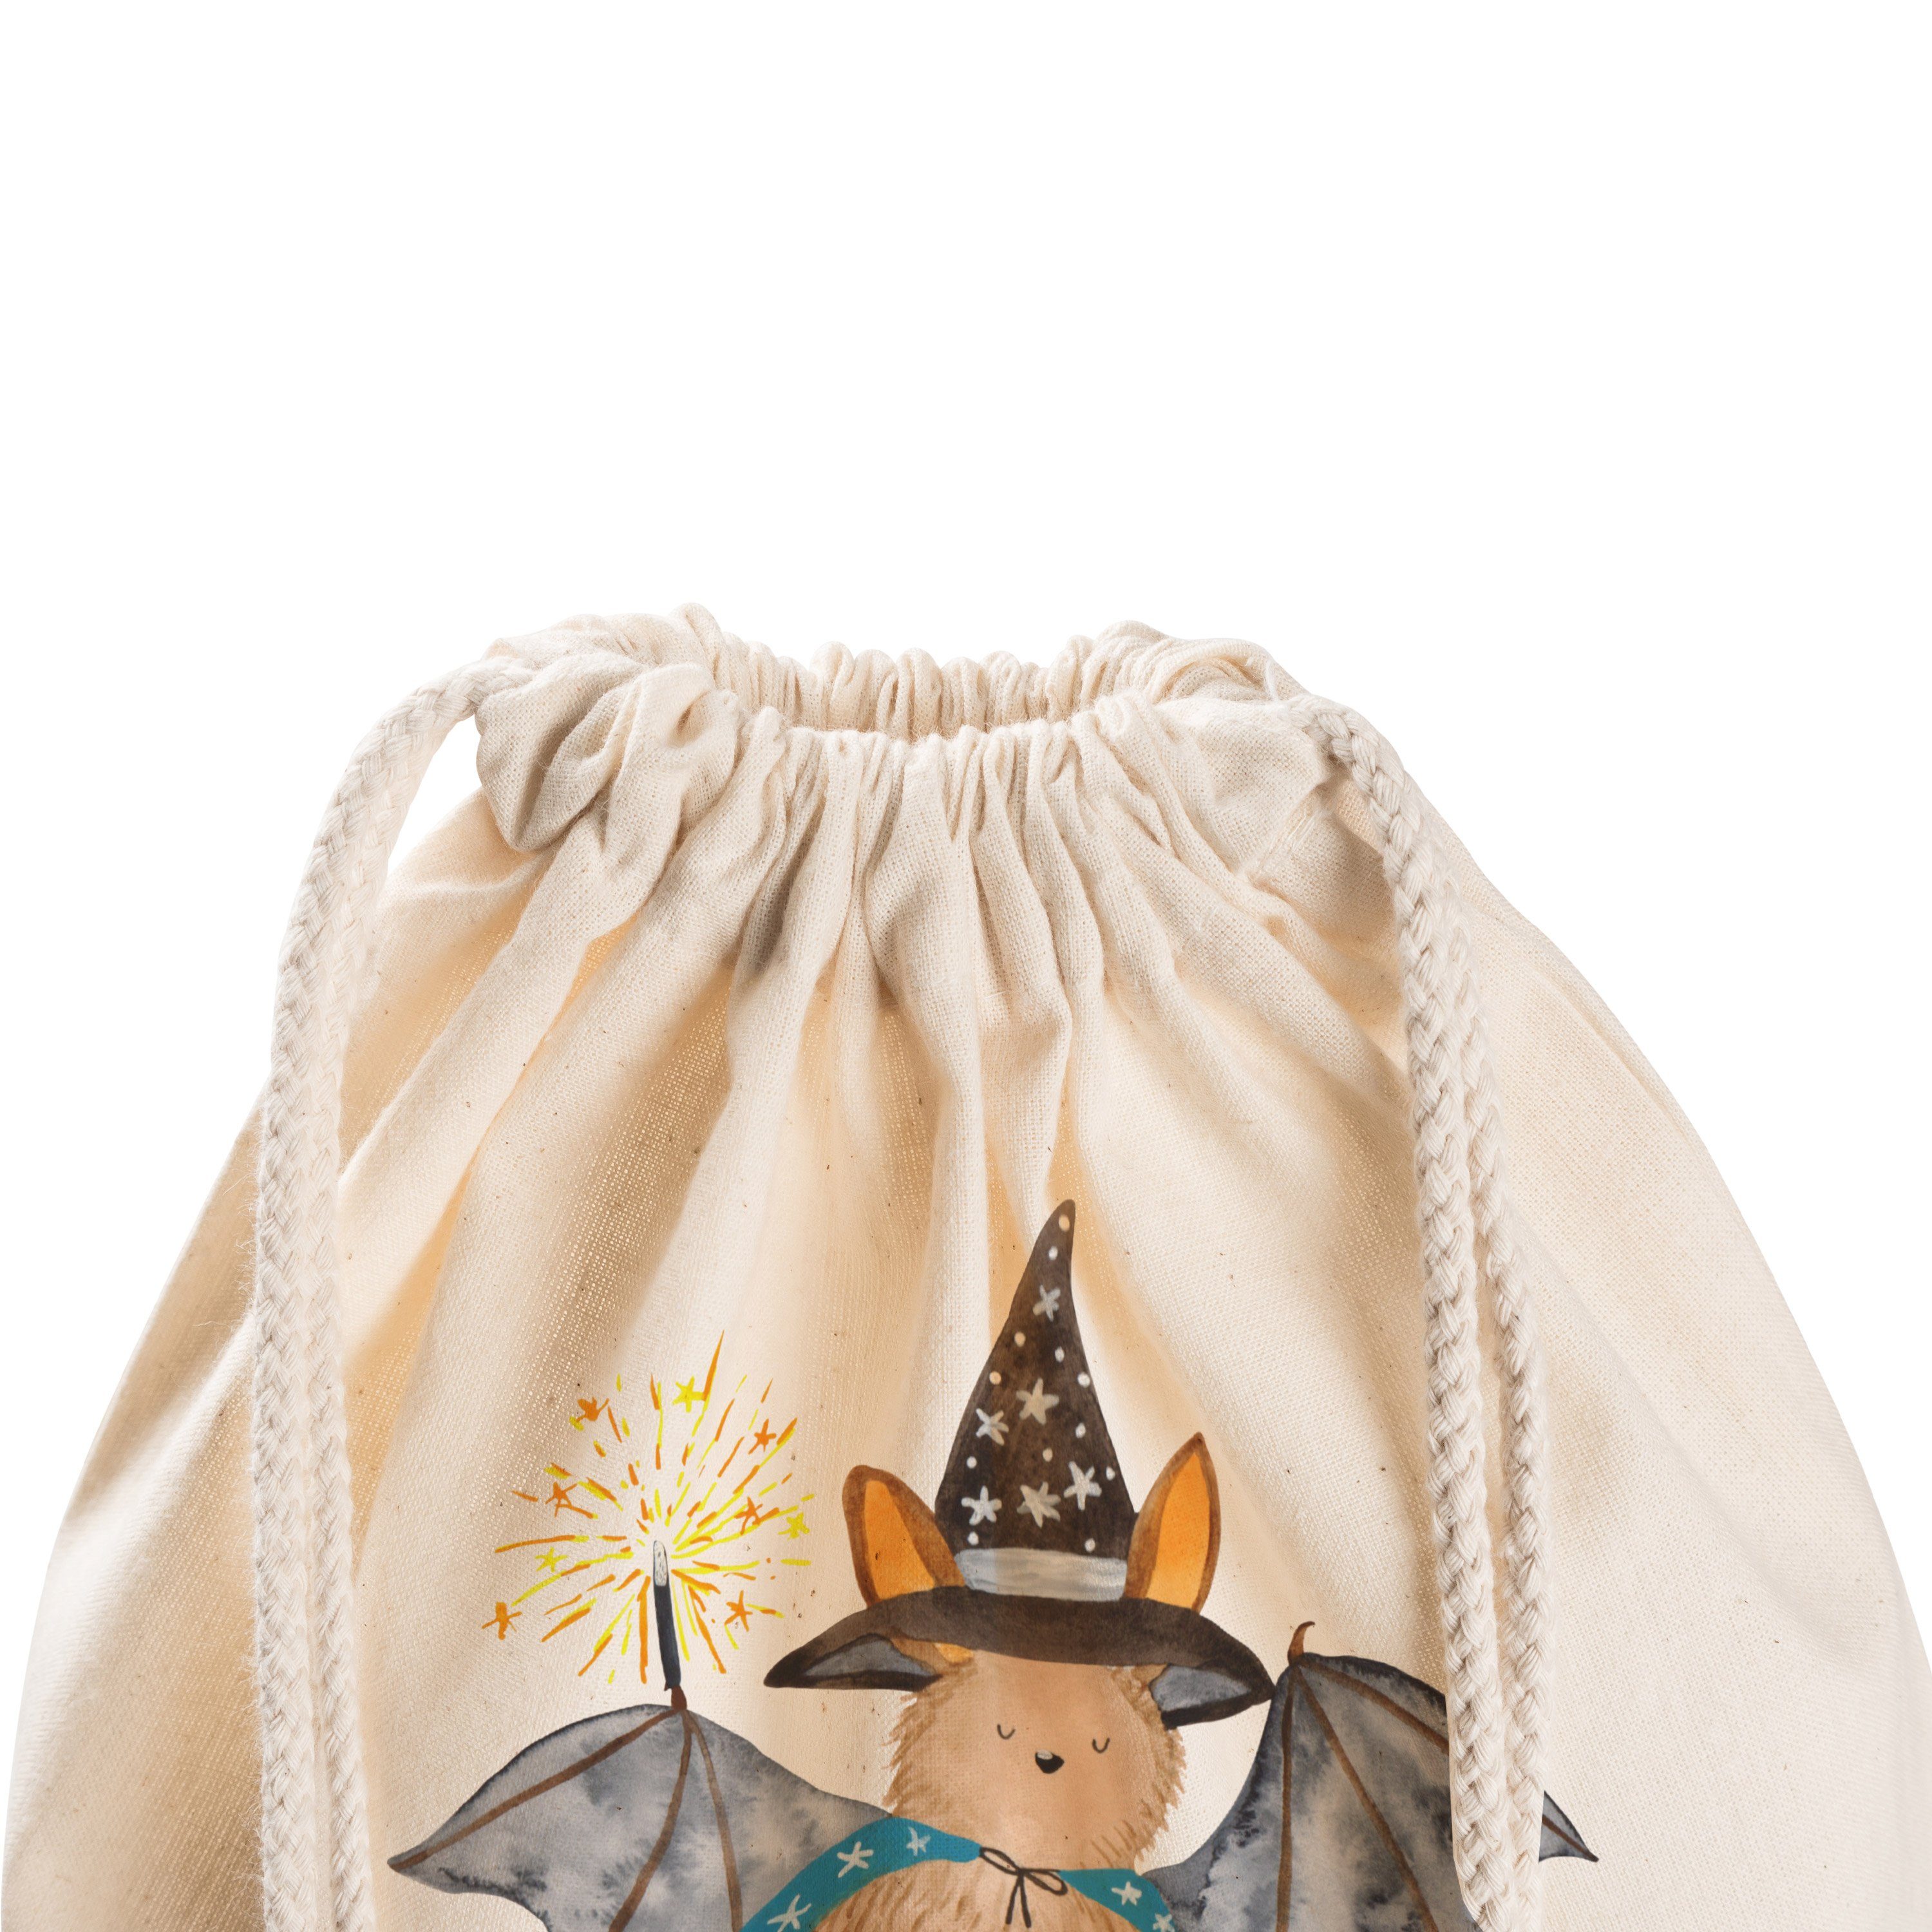 Damen Gepäck|Taschen & Rucksäcke Mr. & Mrs. Panda Sporttasche Fledermaus Zauberer - Transparent - Stoffbeutel, Fledermäuse, süße